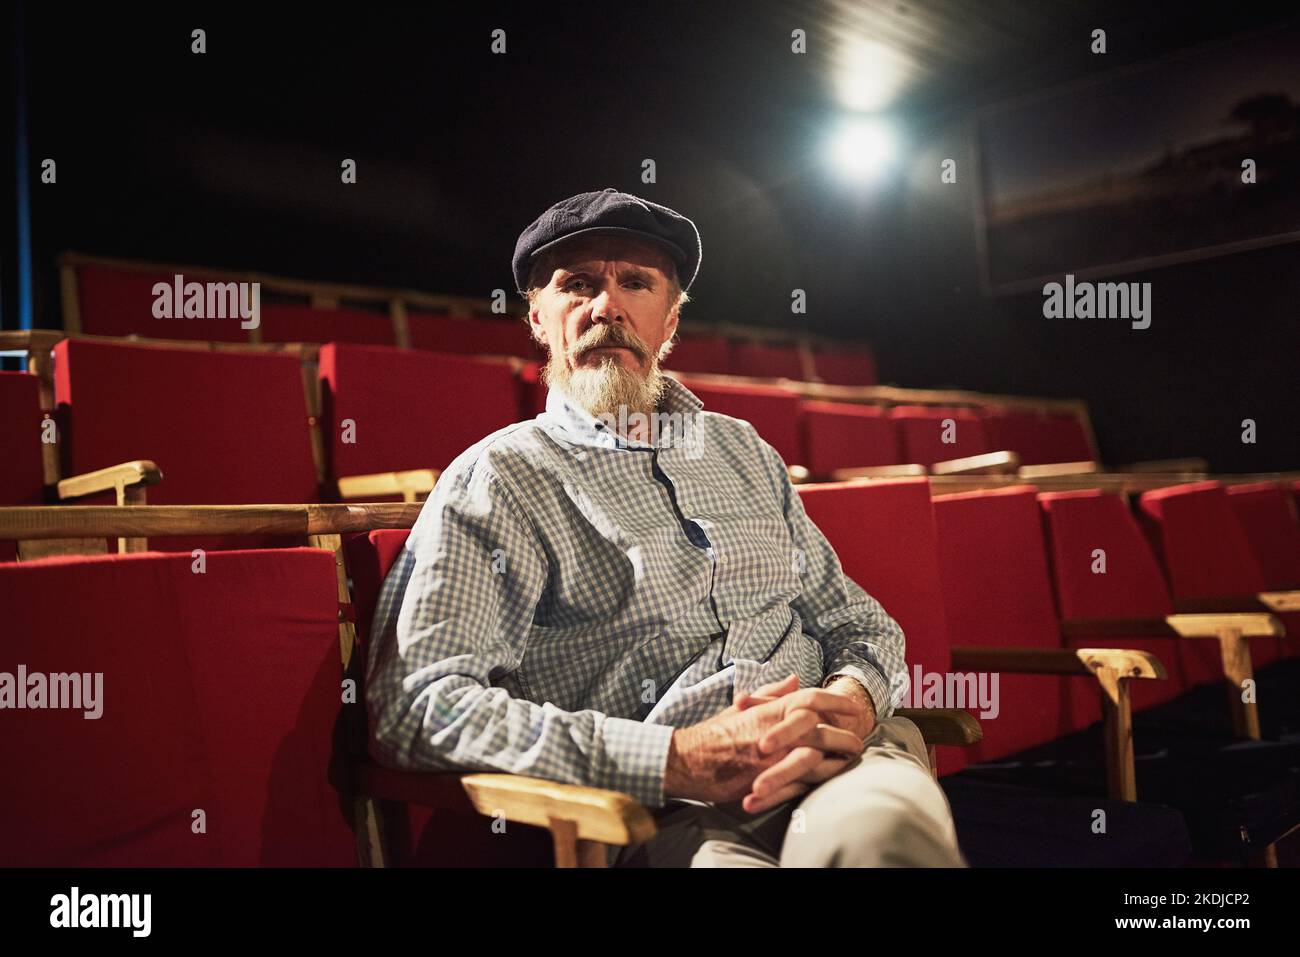 HES un cinephile condito. Ritratto di un uomo anziano sicuro seduto da solo in un cinema vuoto. Foto Stock